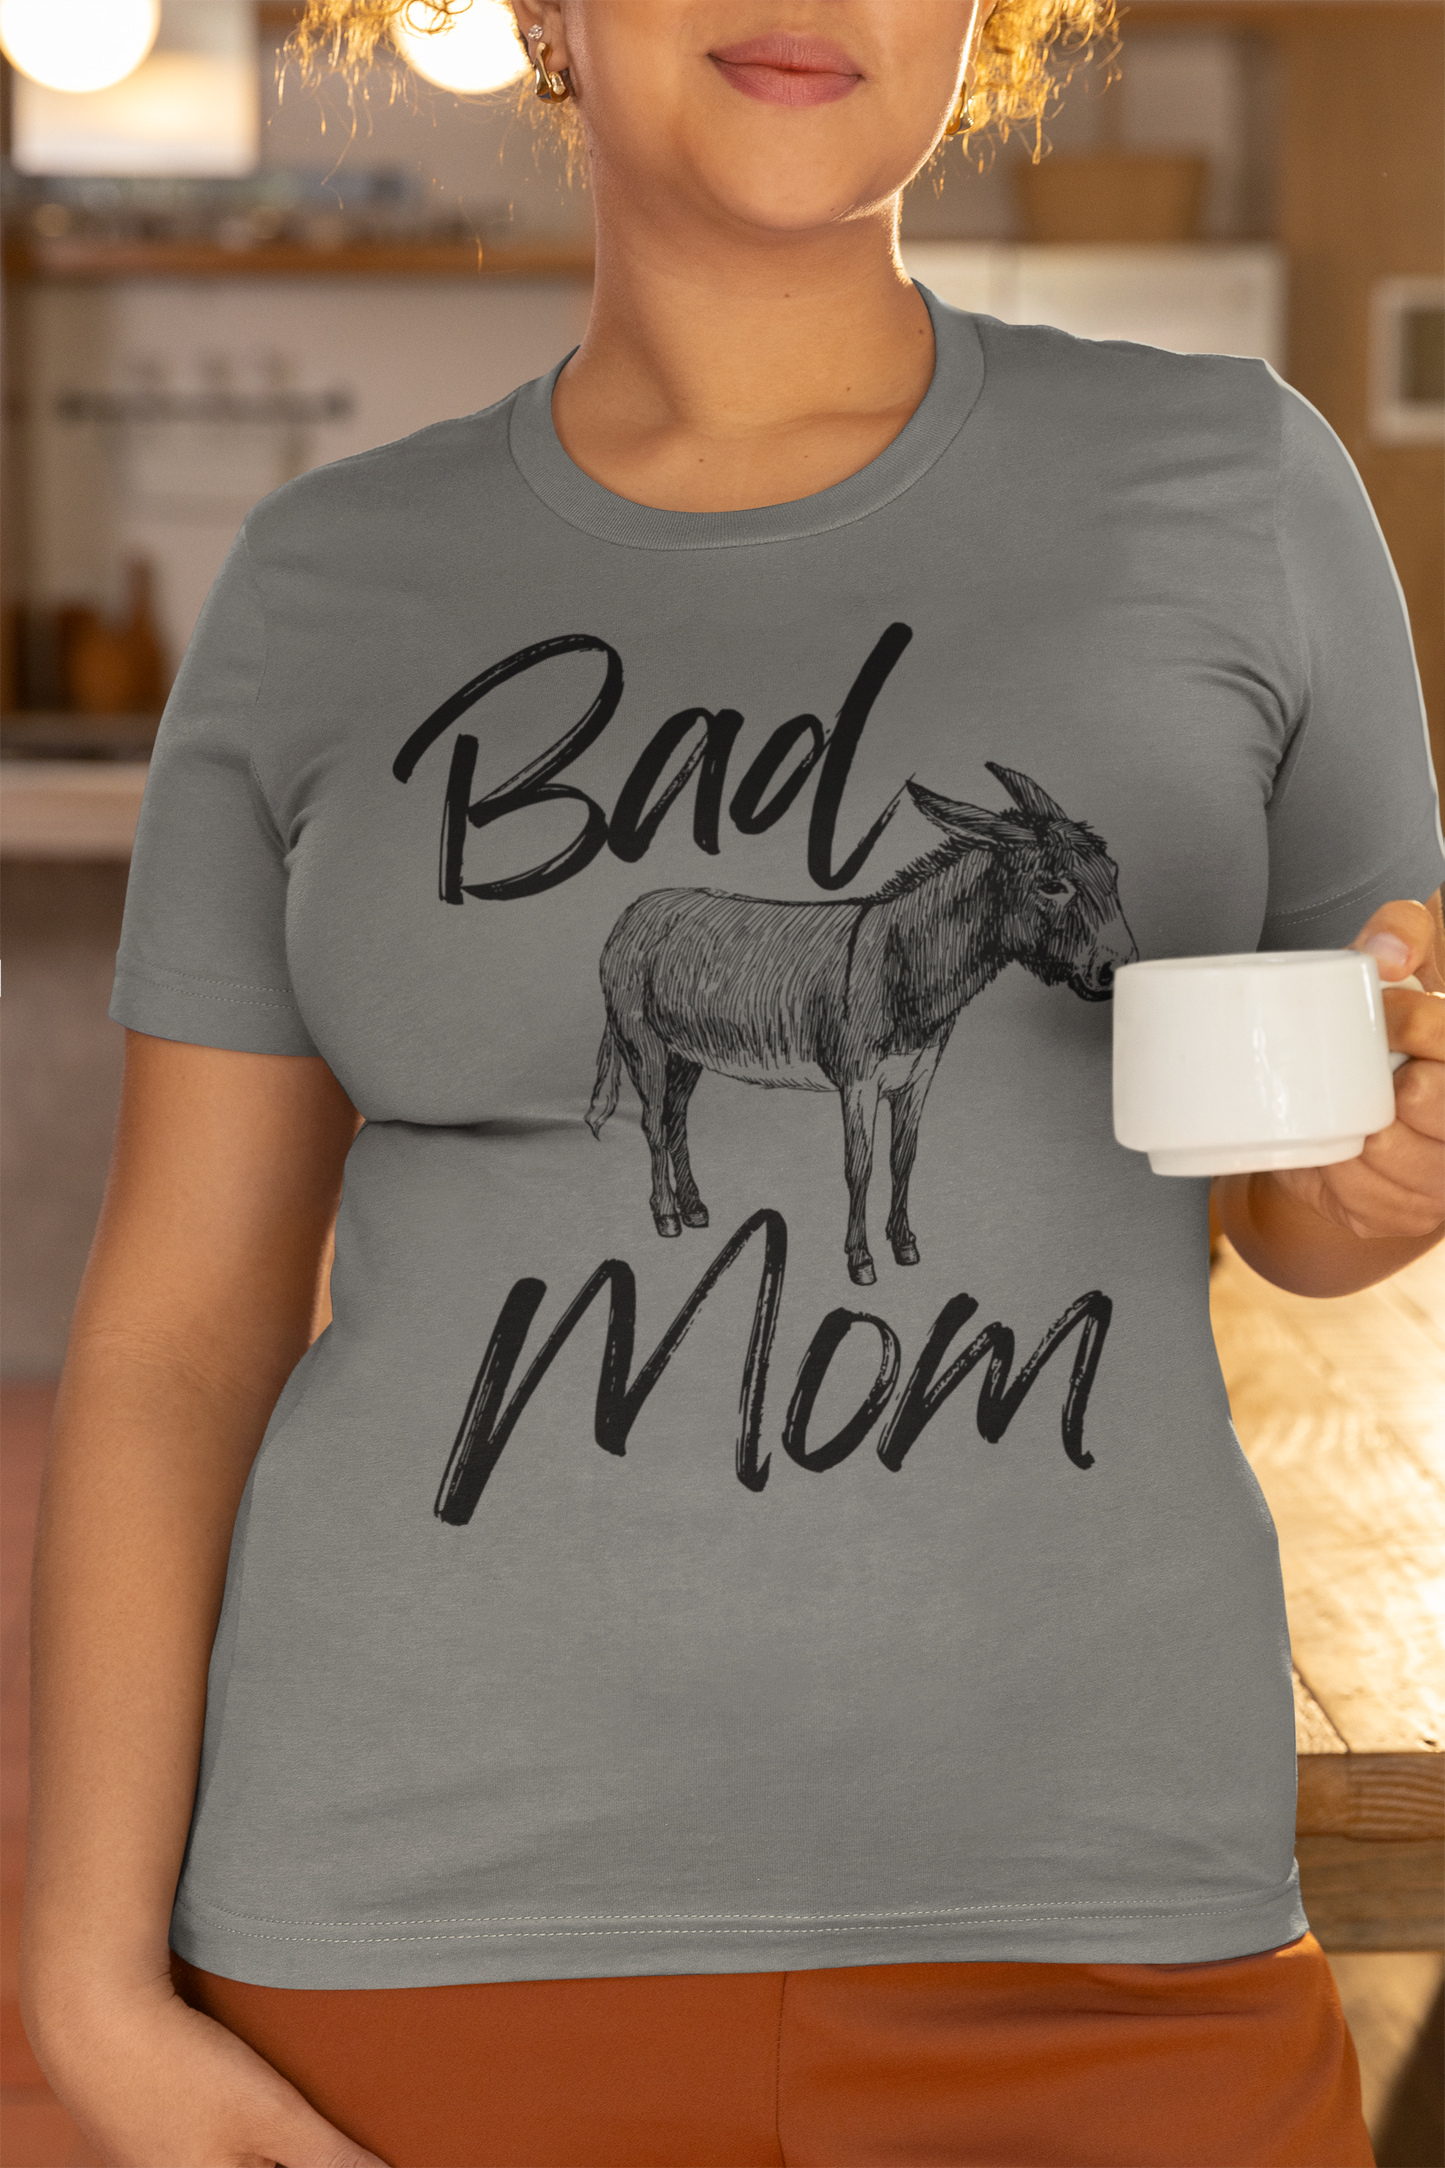 Bad Ass Mom T-Shirt